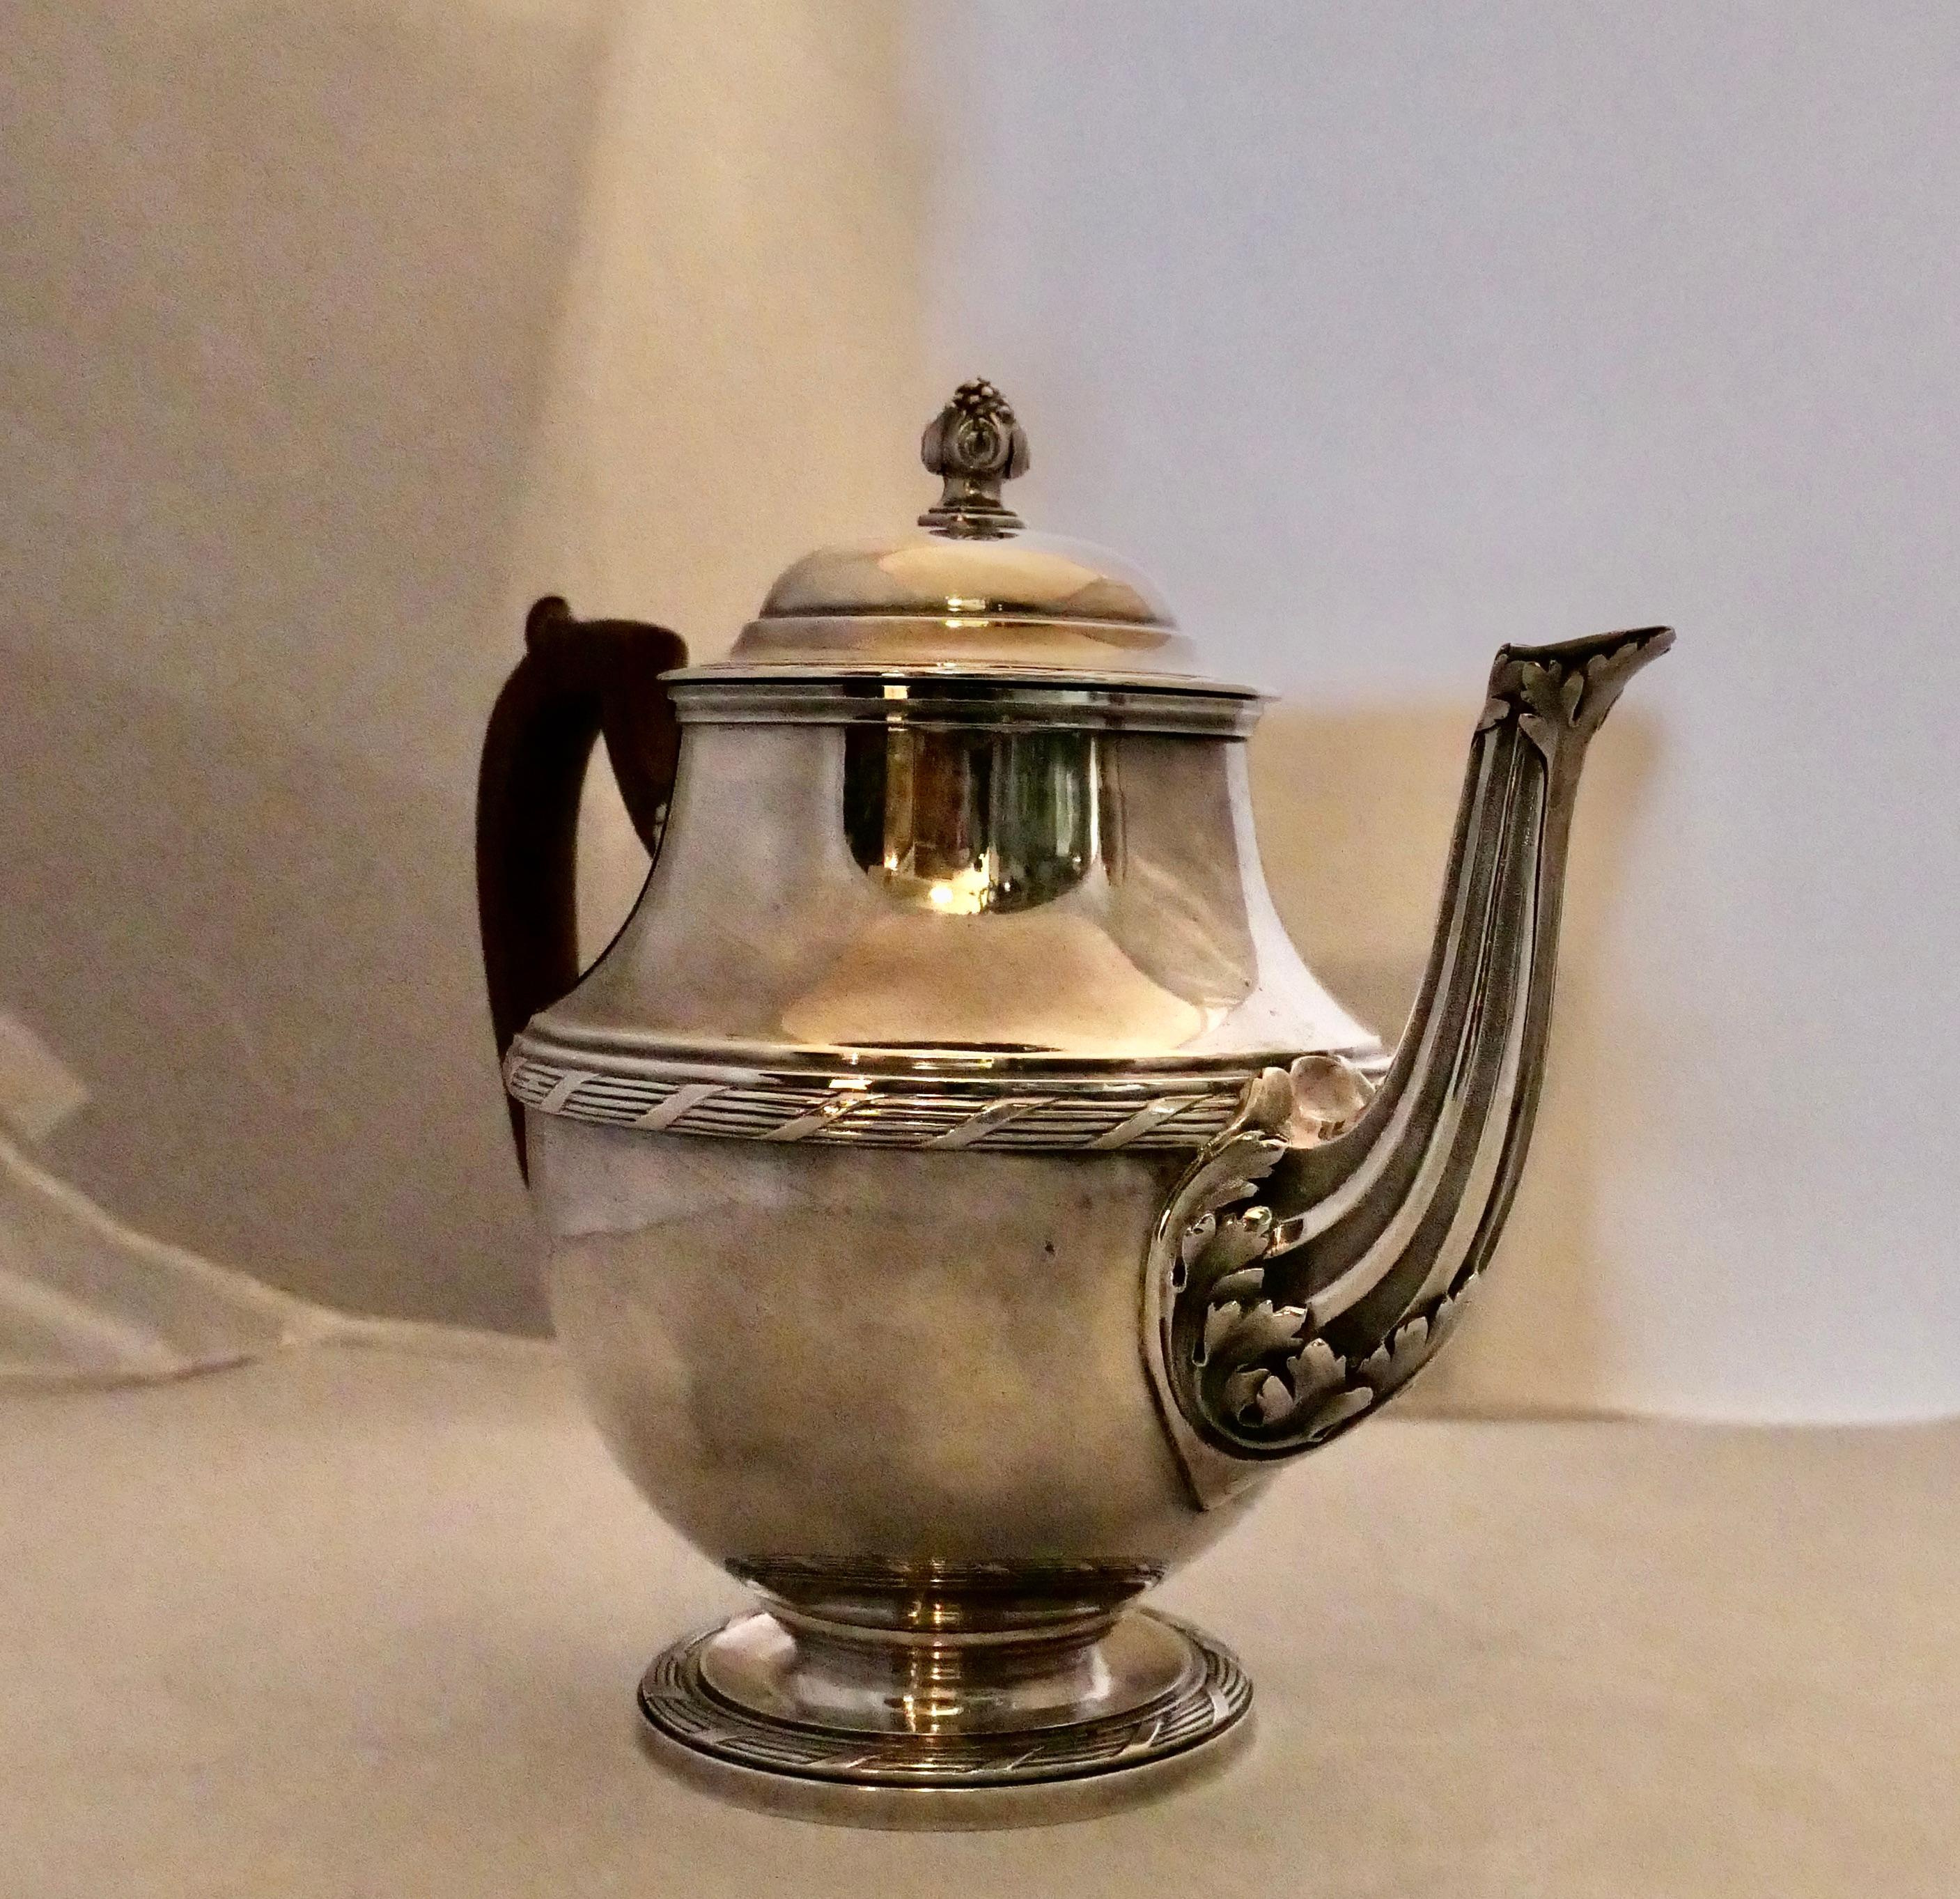 Diese seltene Vintage-Teekanne aus französischem Sterlingsilber wurde von Georges Fouquet-Lapar in den 1930er Jahren entworfen. Sie ist stilvoll mit einem kunstvollen Ausguss und dezenten Bändern verziert. Am Korpus ist ein eleganter, geschwungener